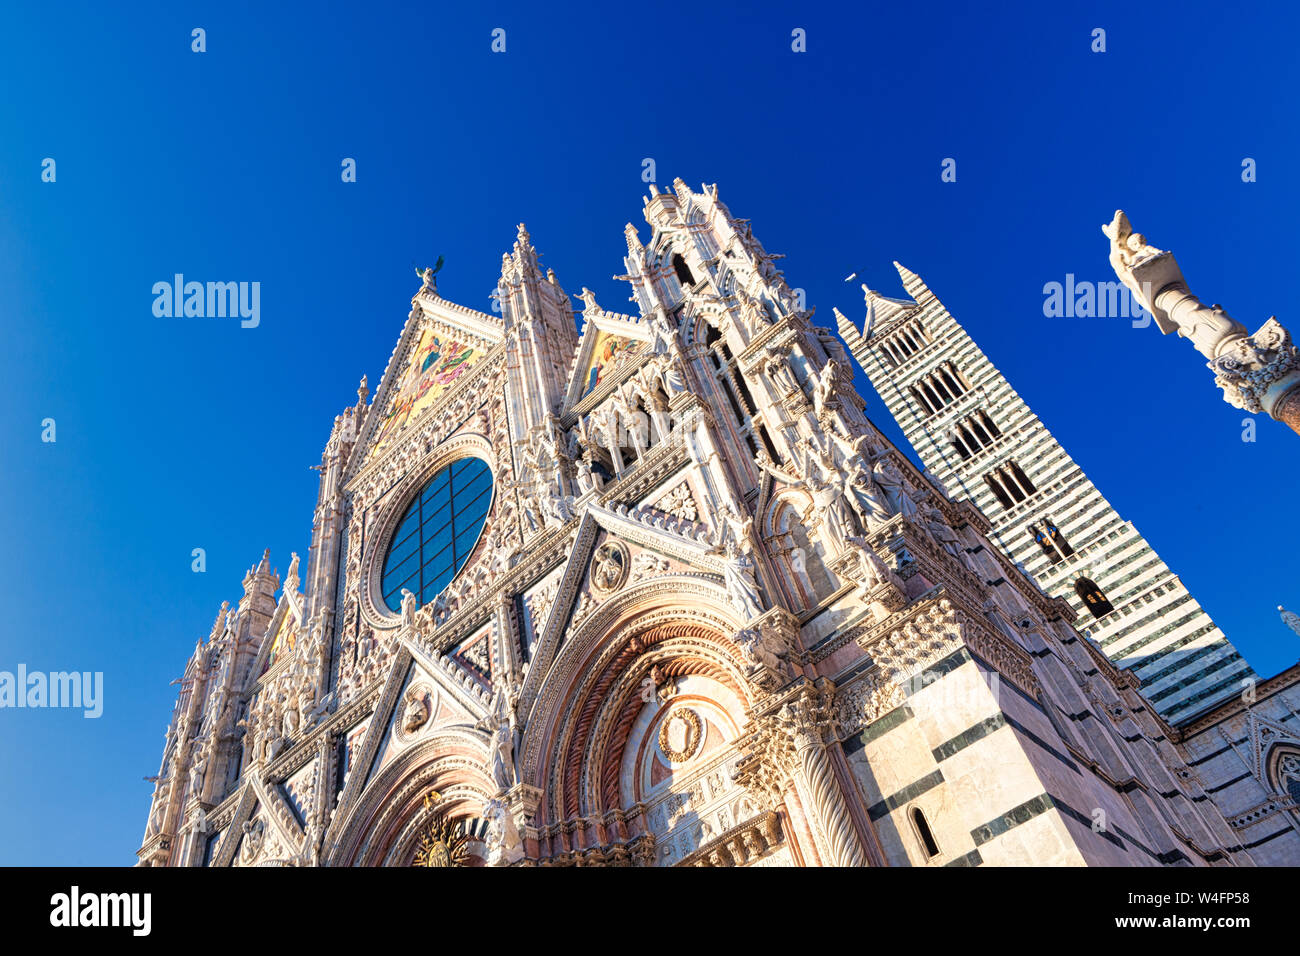 Siena, Toskana, Italien - 08-11-2011: Blick auf den berühmten Duomo di Siena in Siena mit einem blauen Himmel und Sonnenschein. Ein beliebtes Touristenziel Stockfoto